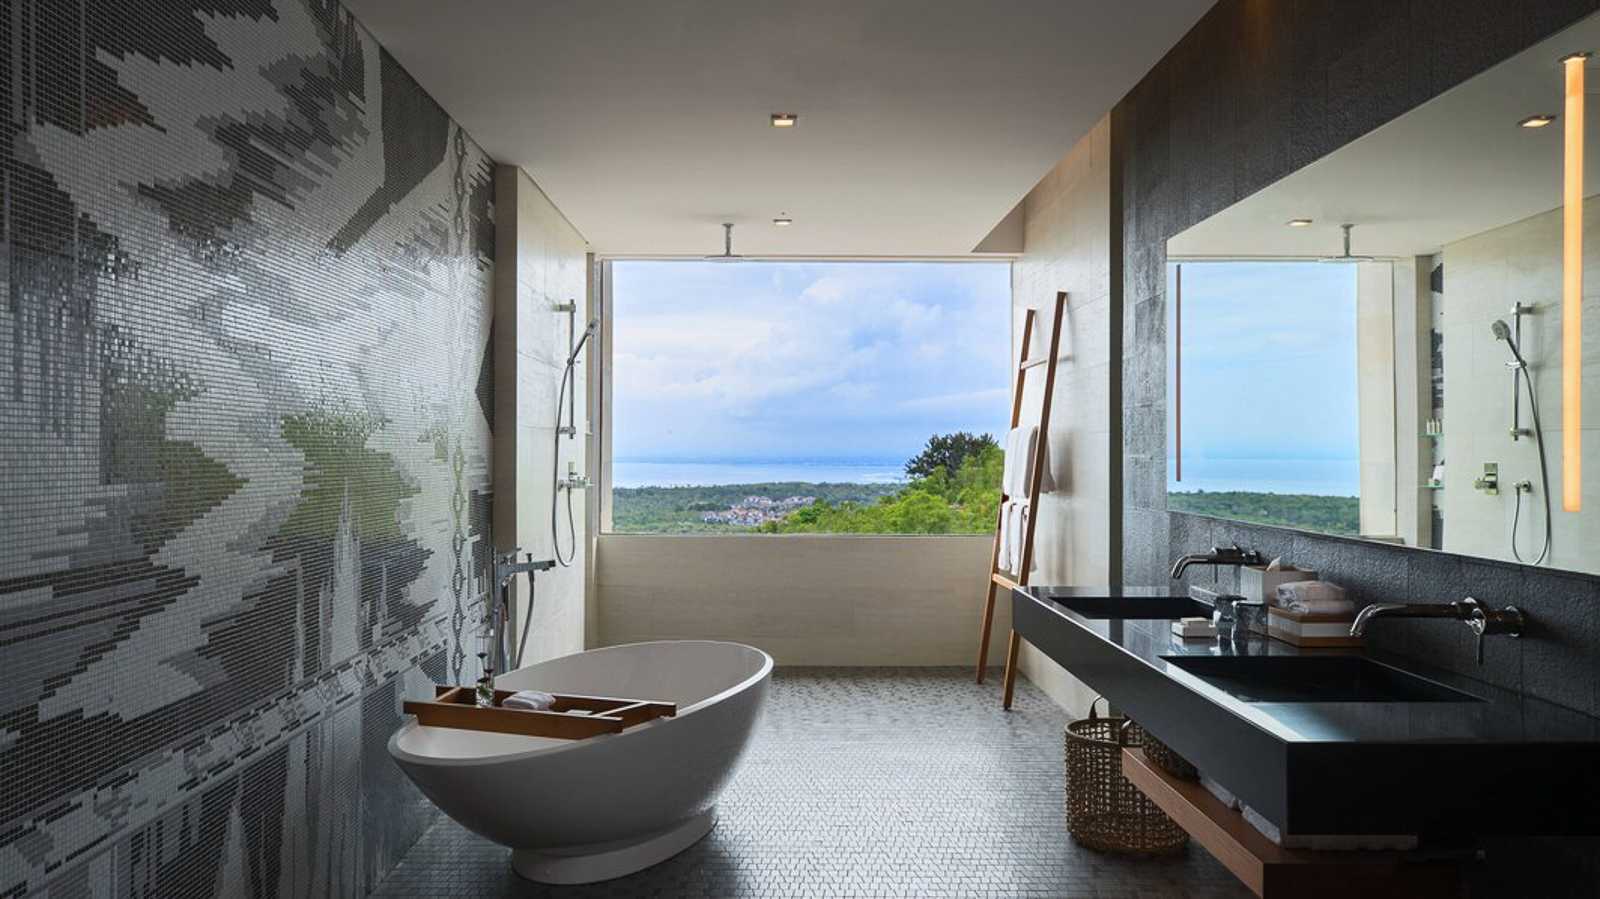 【峇里島自由行】行政套房超豪華☆浴室比我房間還��大!☆峇里島萬麗度假酒店 Renaissance Bali Uluwatu Resort & Spa